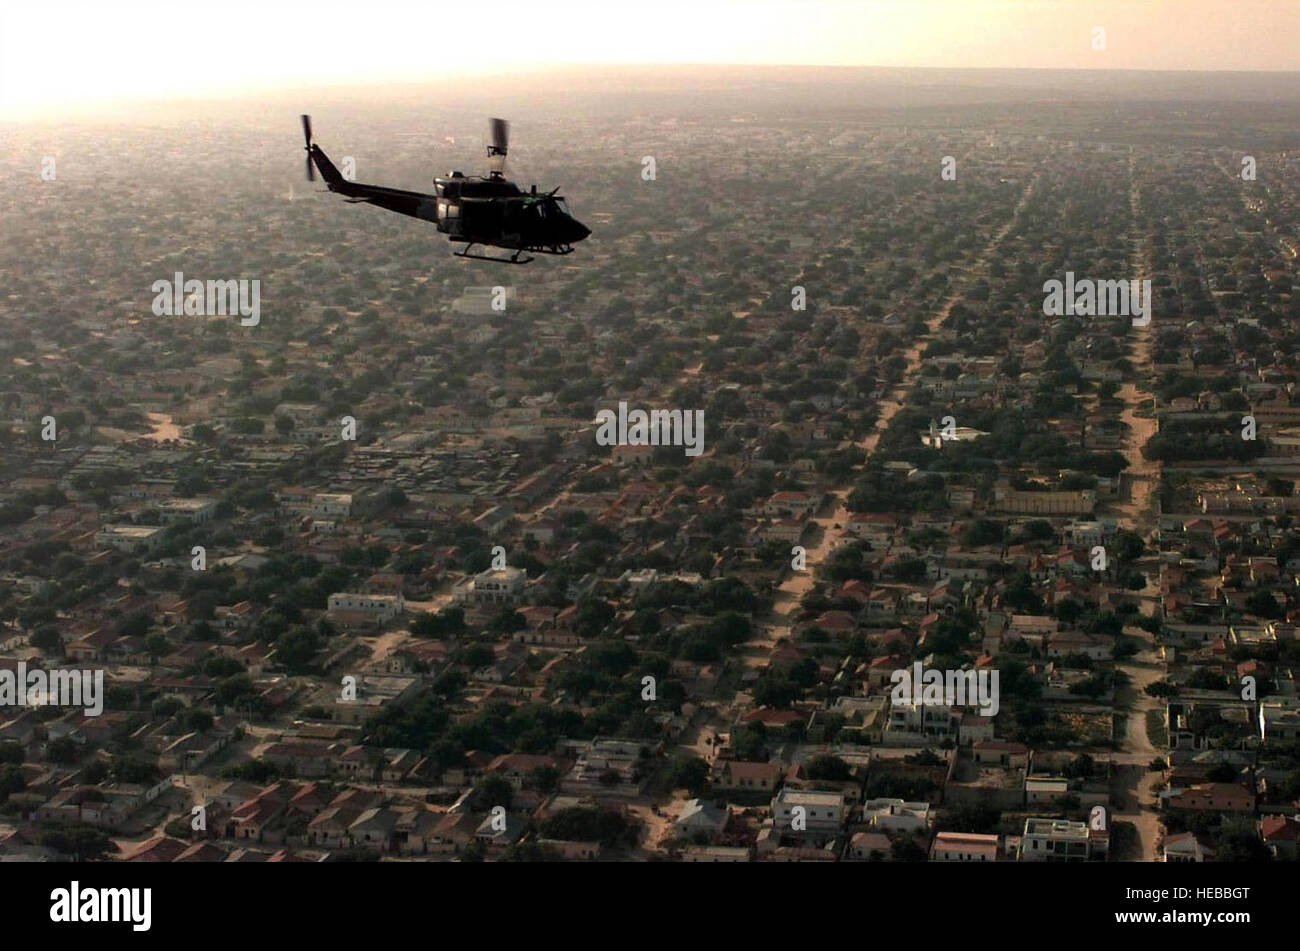 Vista aérea, lado derecho del perfil, de un Marine estadounidense UH-1N 'Huey' helicóptero sobrevuela una zona residencial de Mogadishu en una misión de patrulla para buscar signos de hostilidades. Esta misión está en apoyo directo de la operación Restaurar la esperanza. Foto de stock